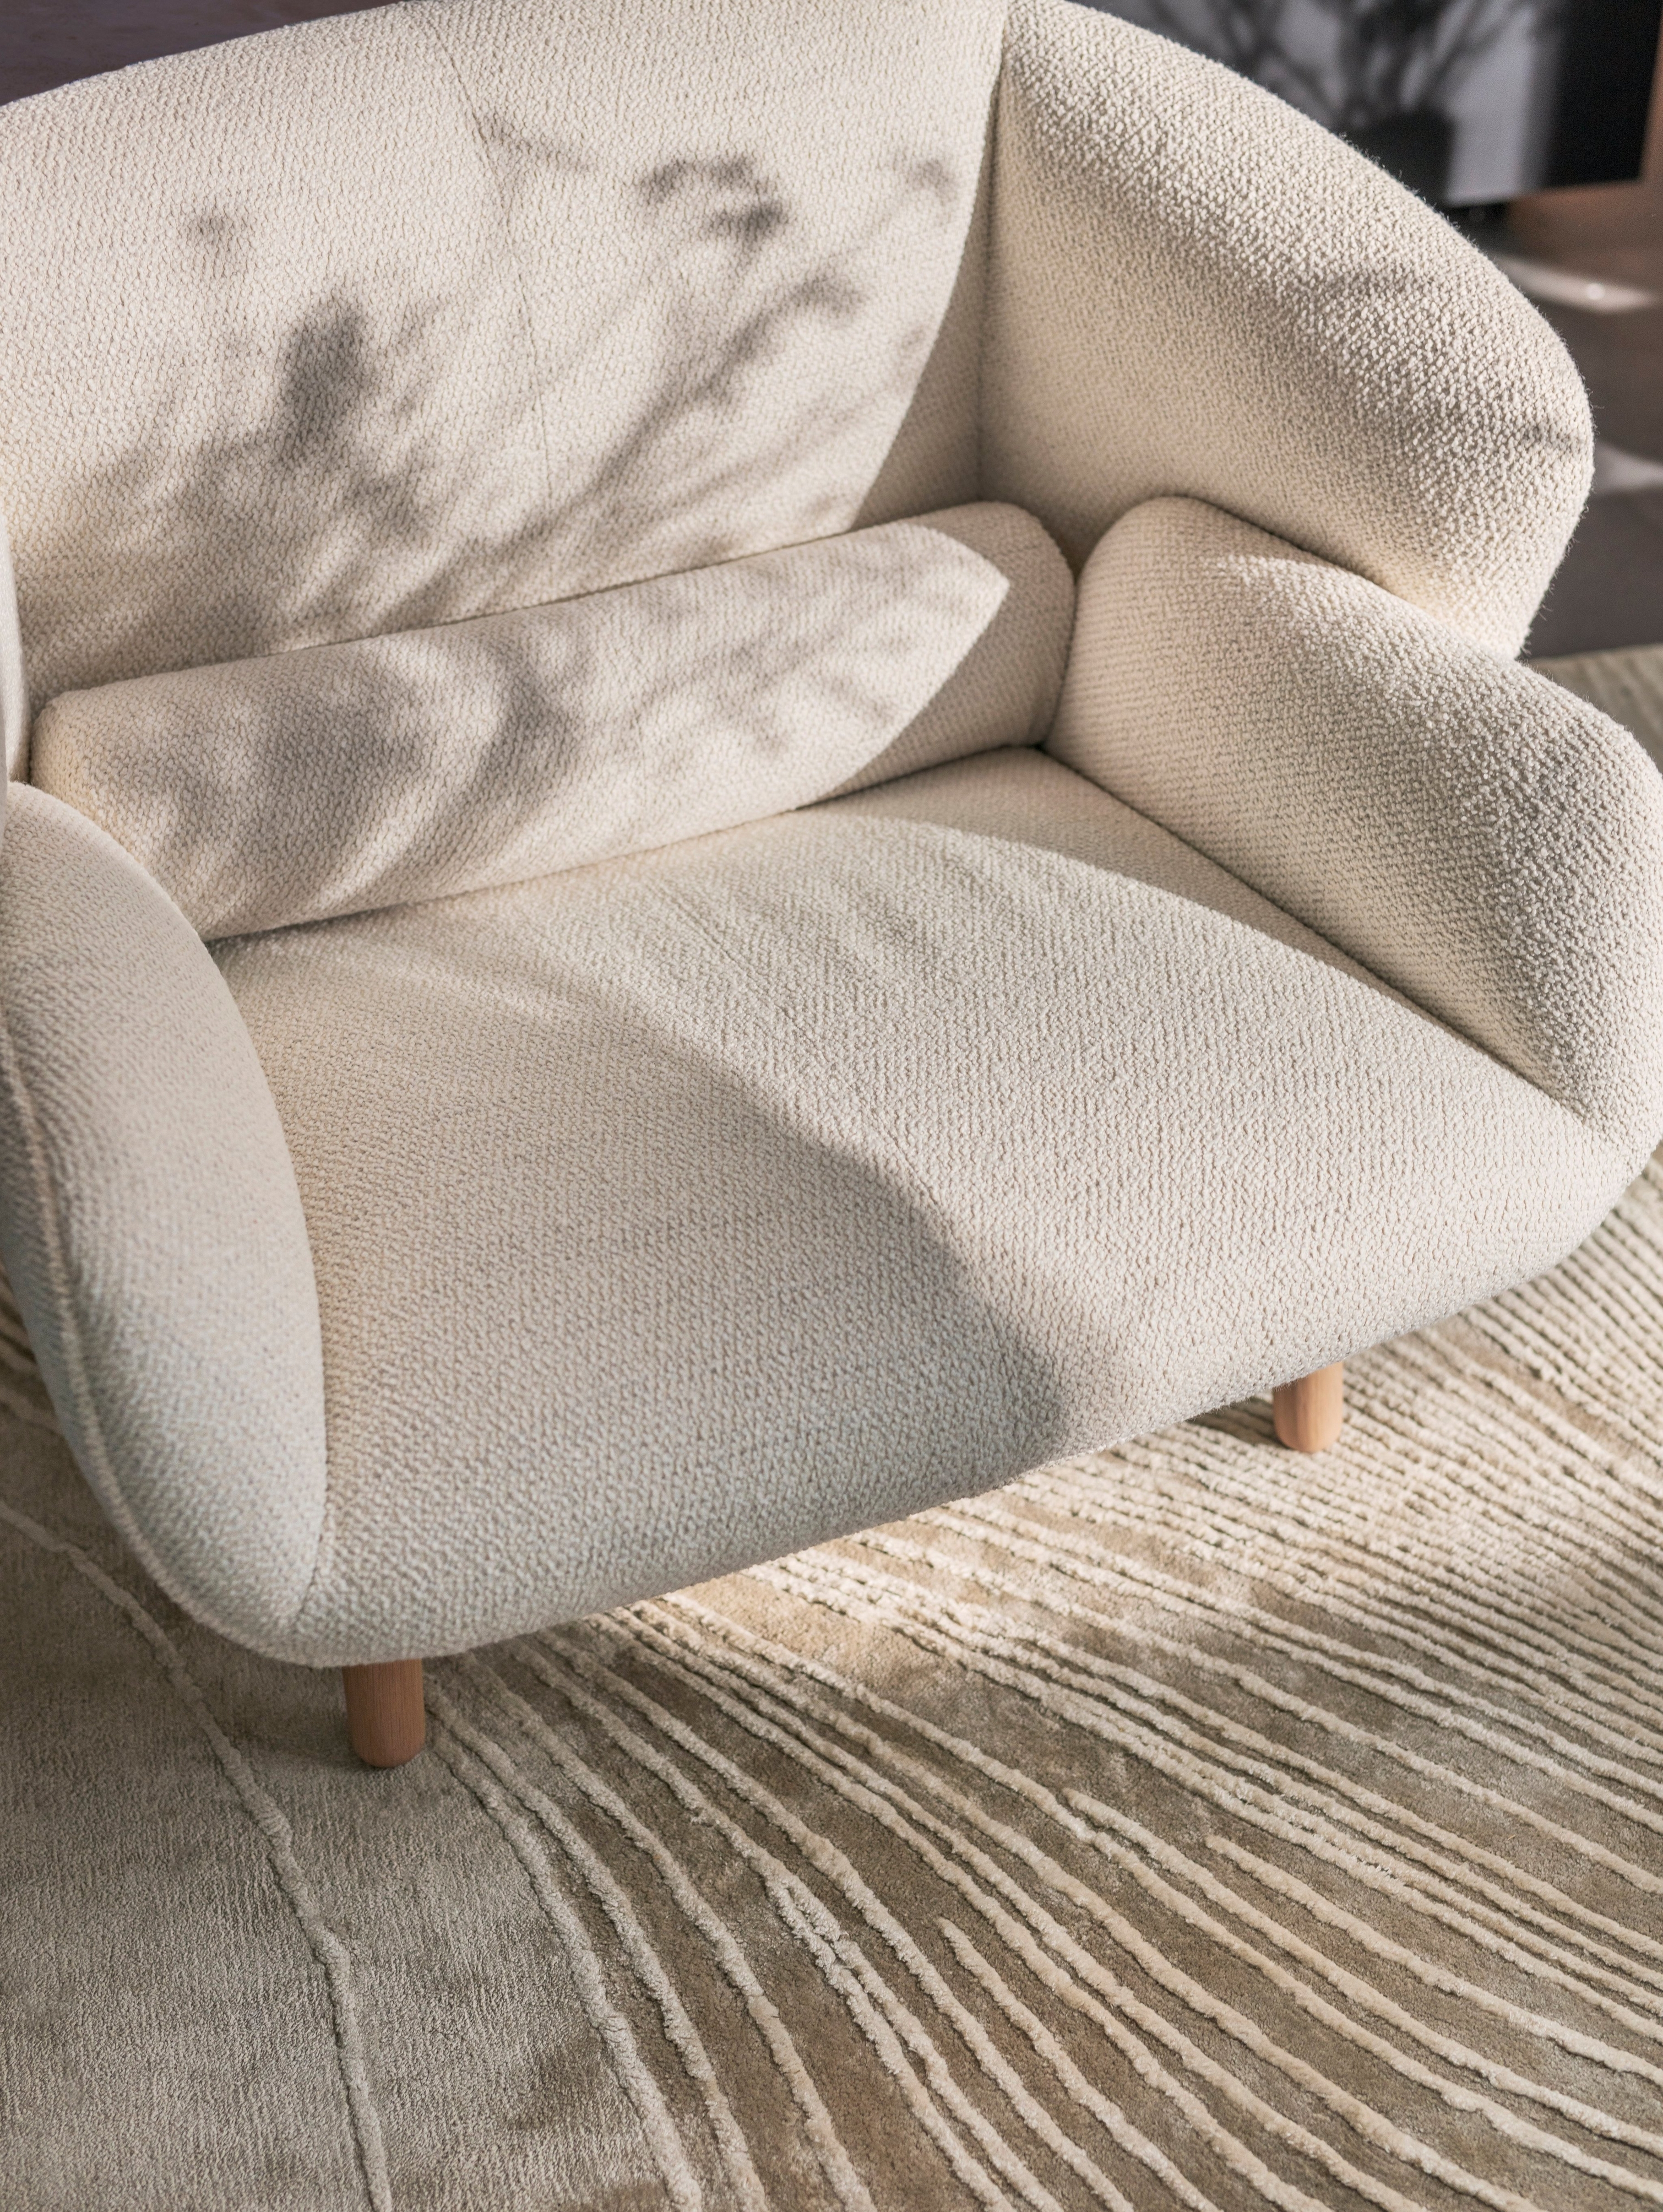 De Fusion fauteuil in witte Lazio stof gestyled met het Tide karpet in grijs/wit.